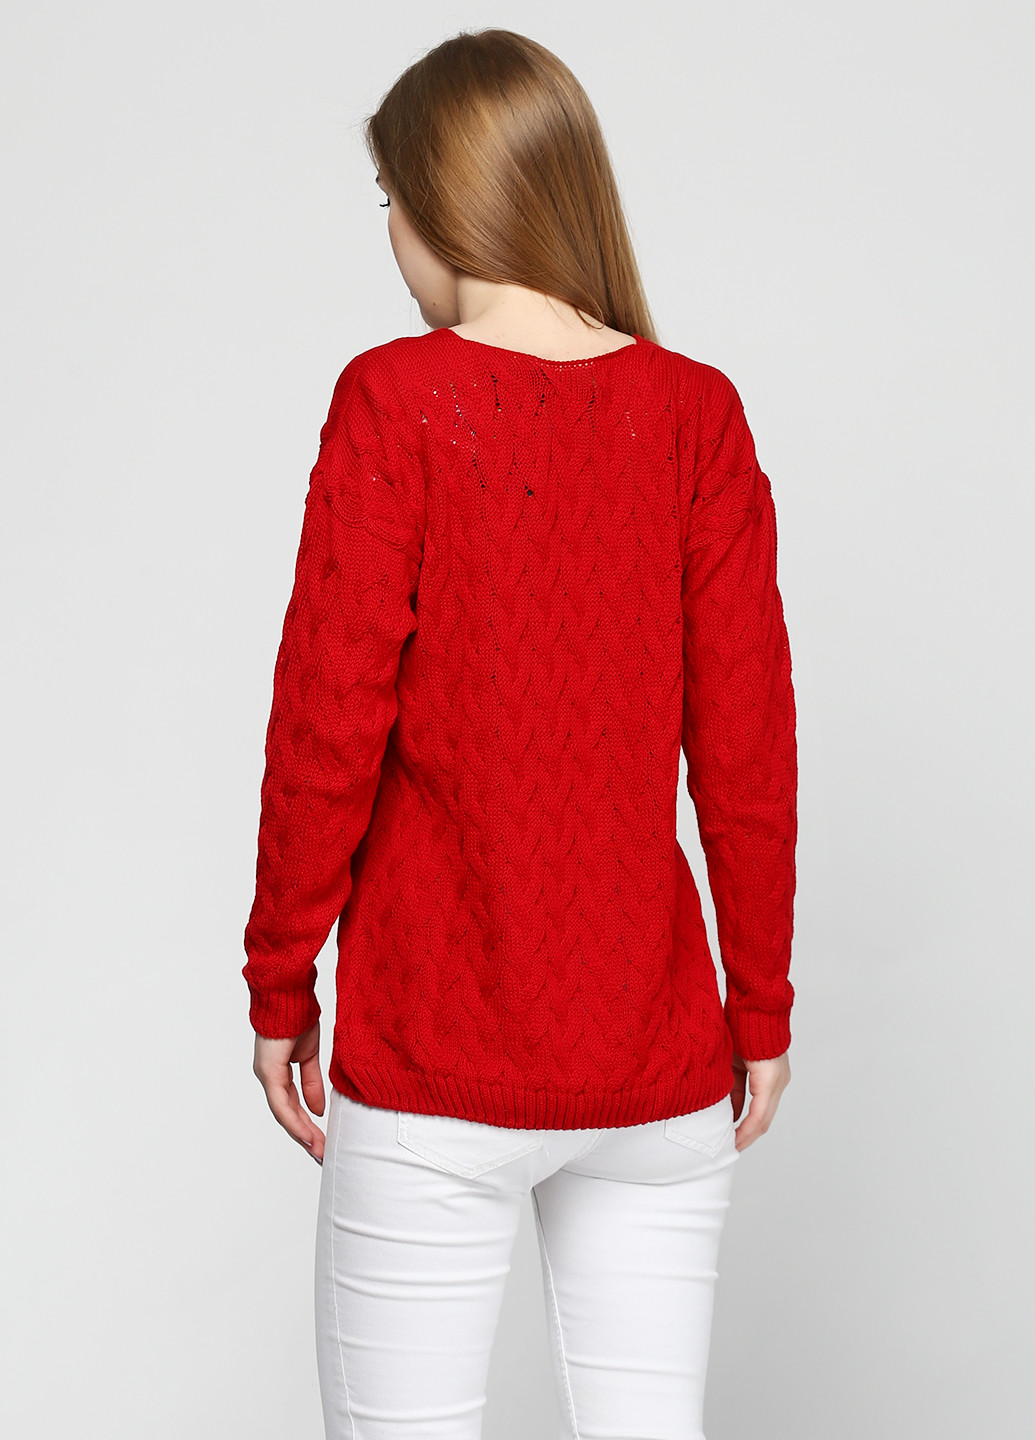 Красный демисезонный пуловер пуловер Zaldiz